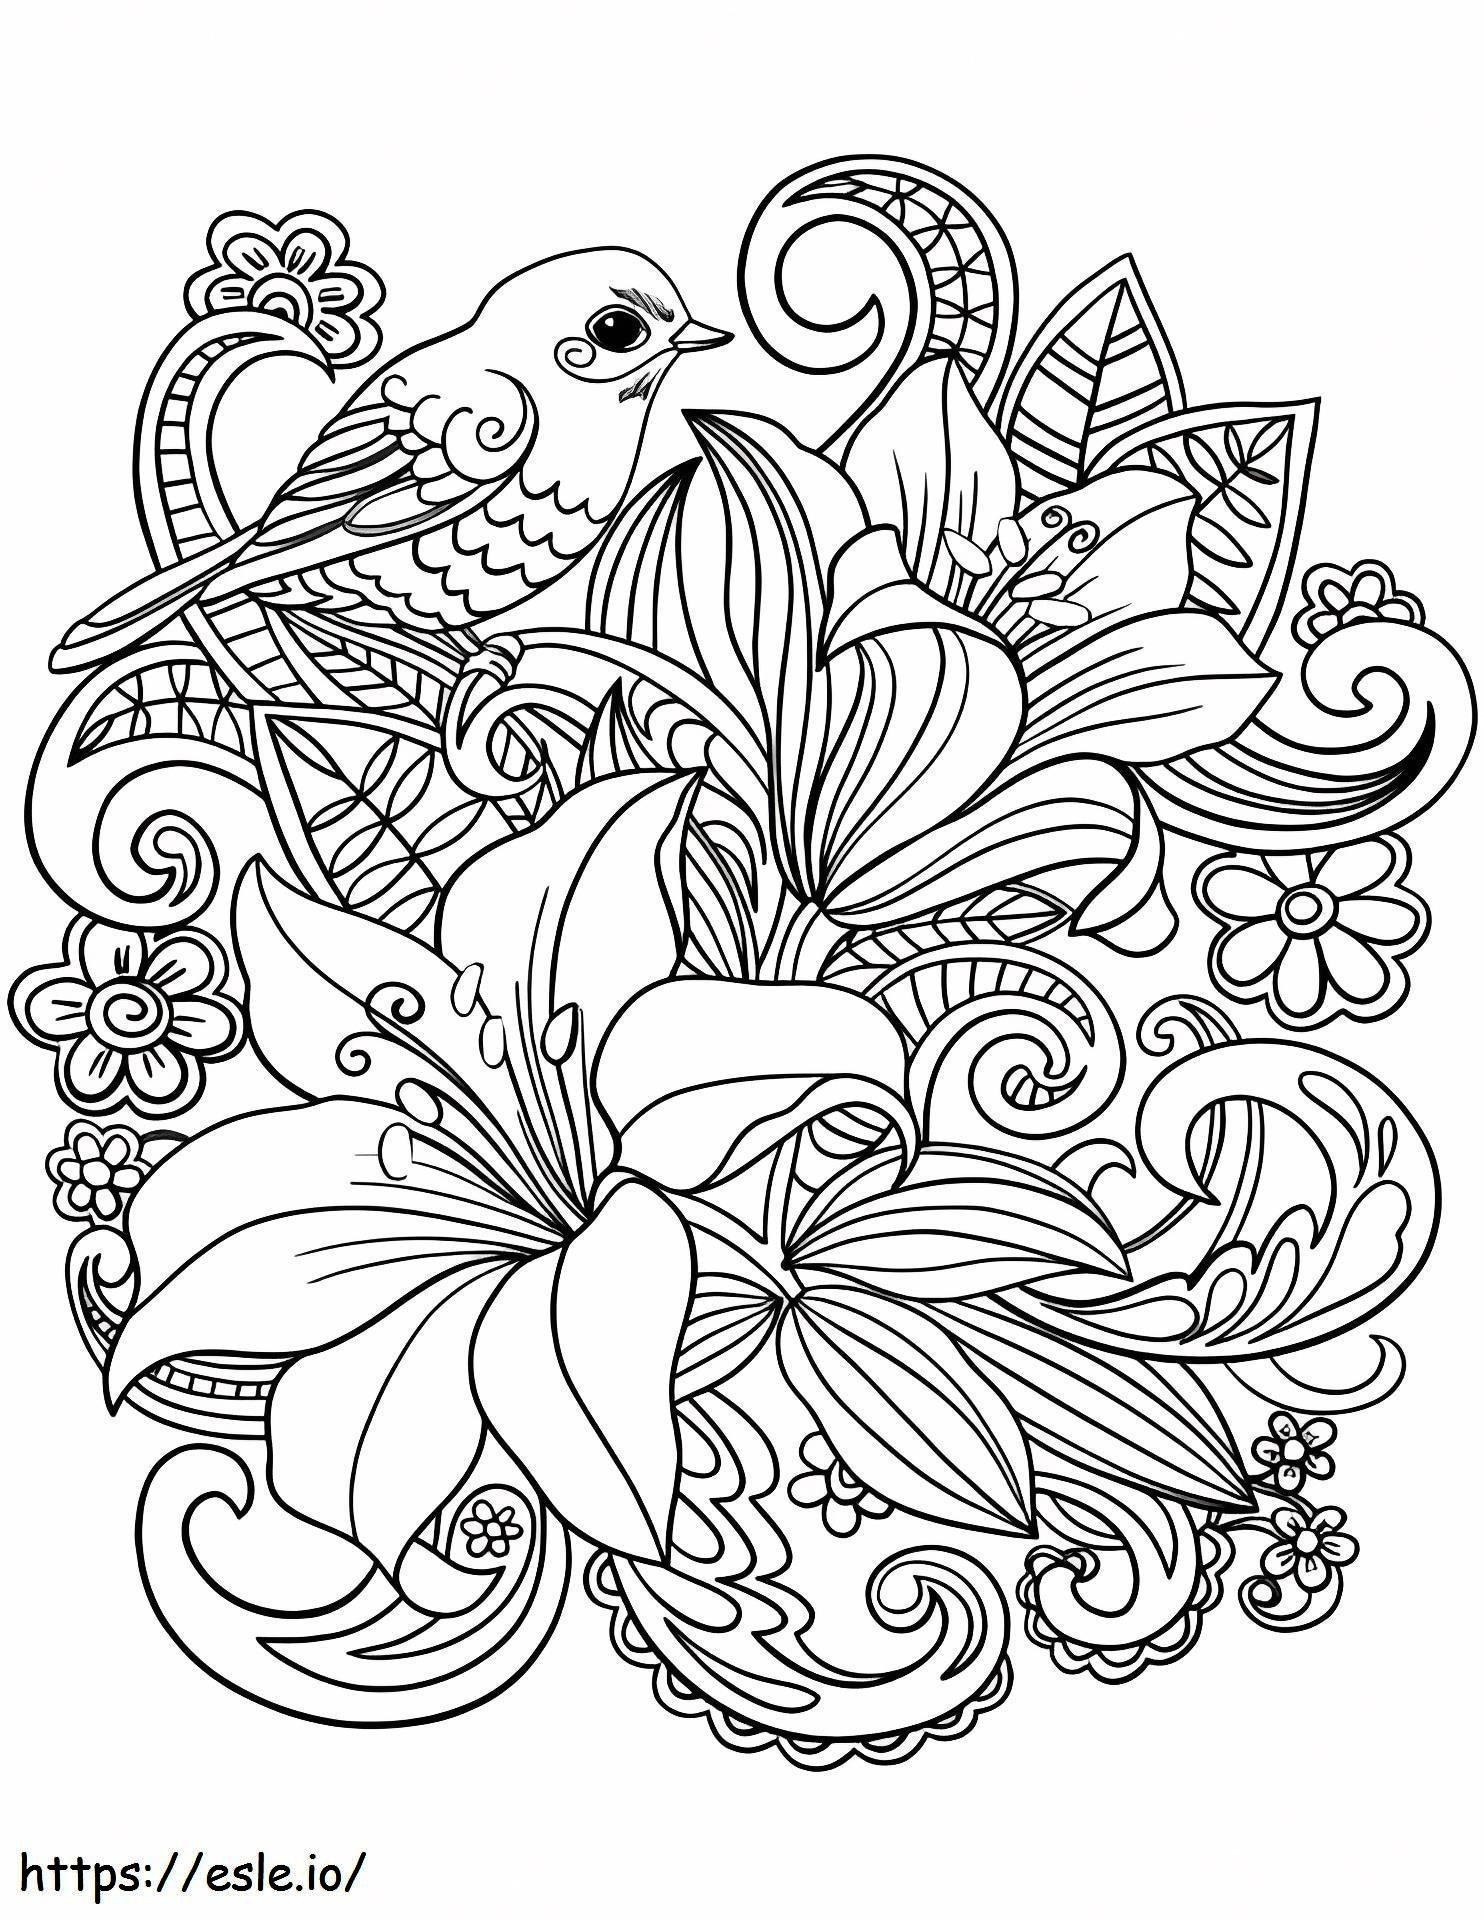 Coloriage 1533003399 Alouette sur fleurs A4 à imprimer dessin